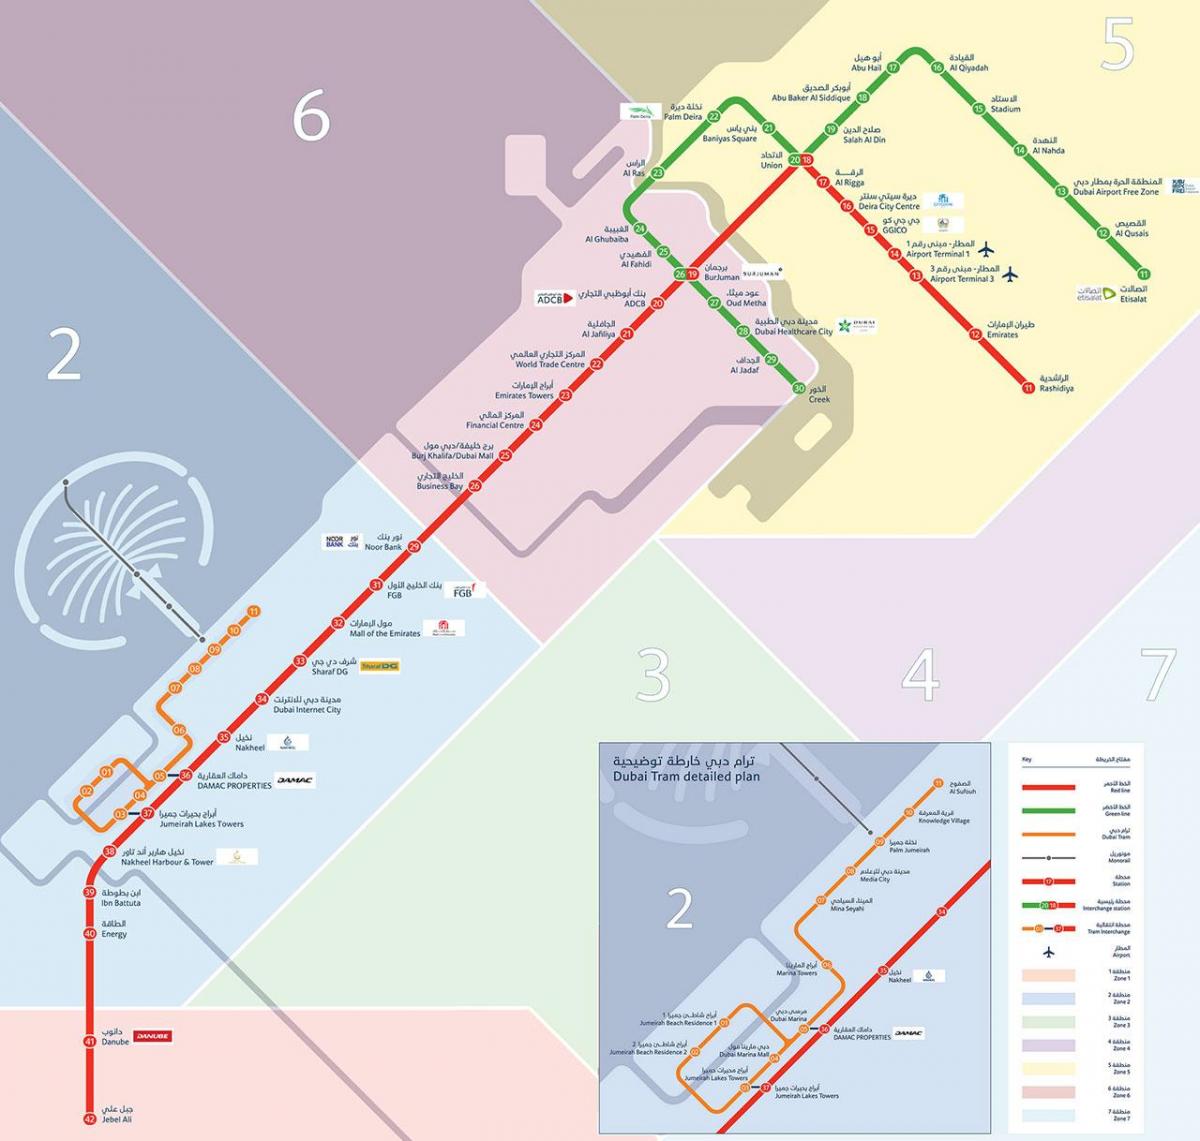 La metropolitana di Dubai mappa con il tram